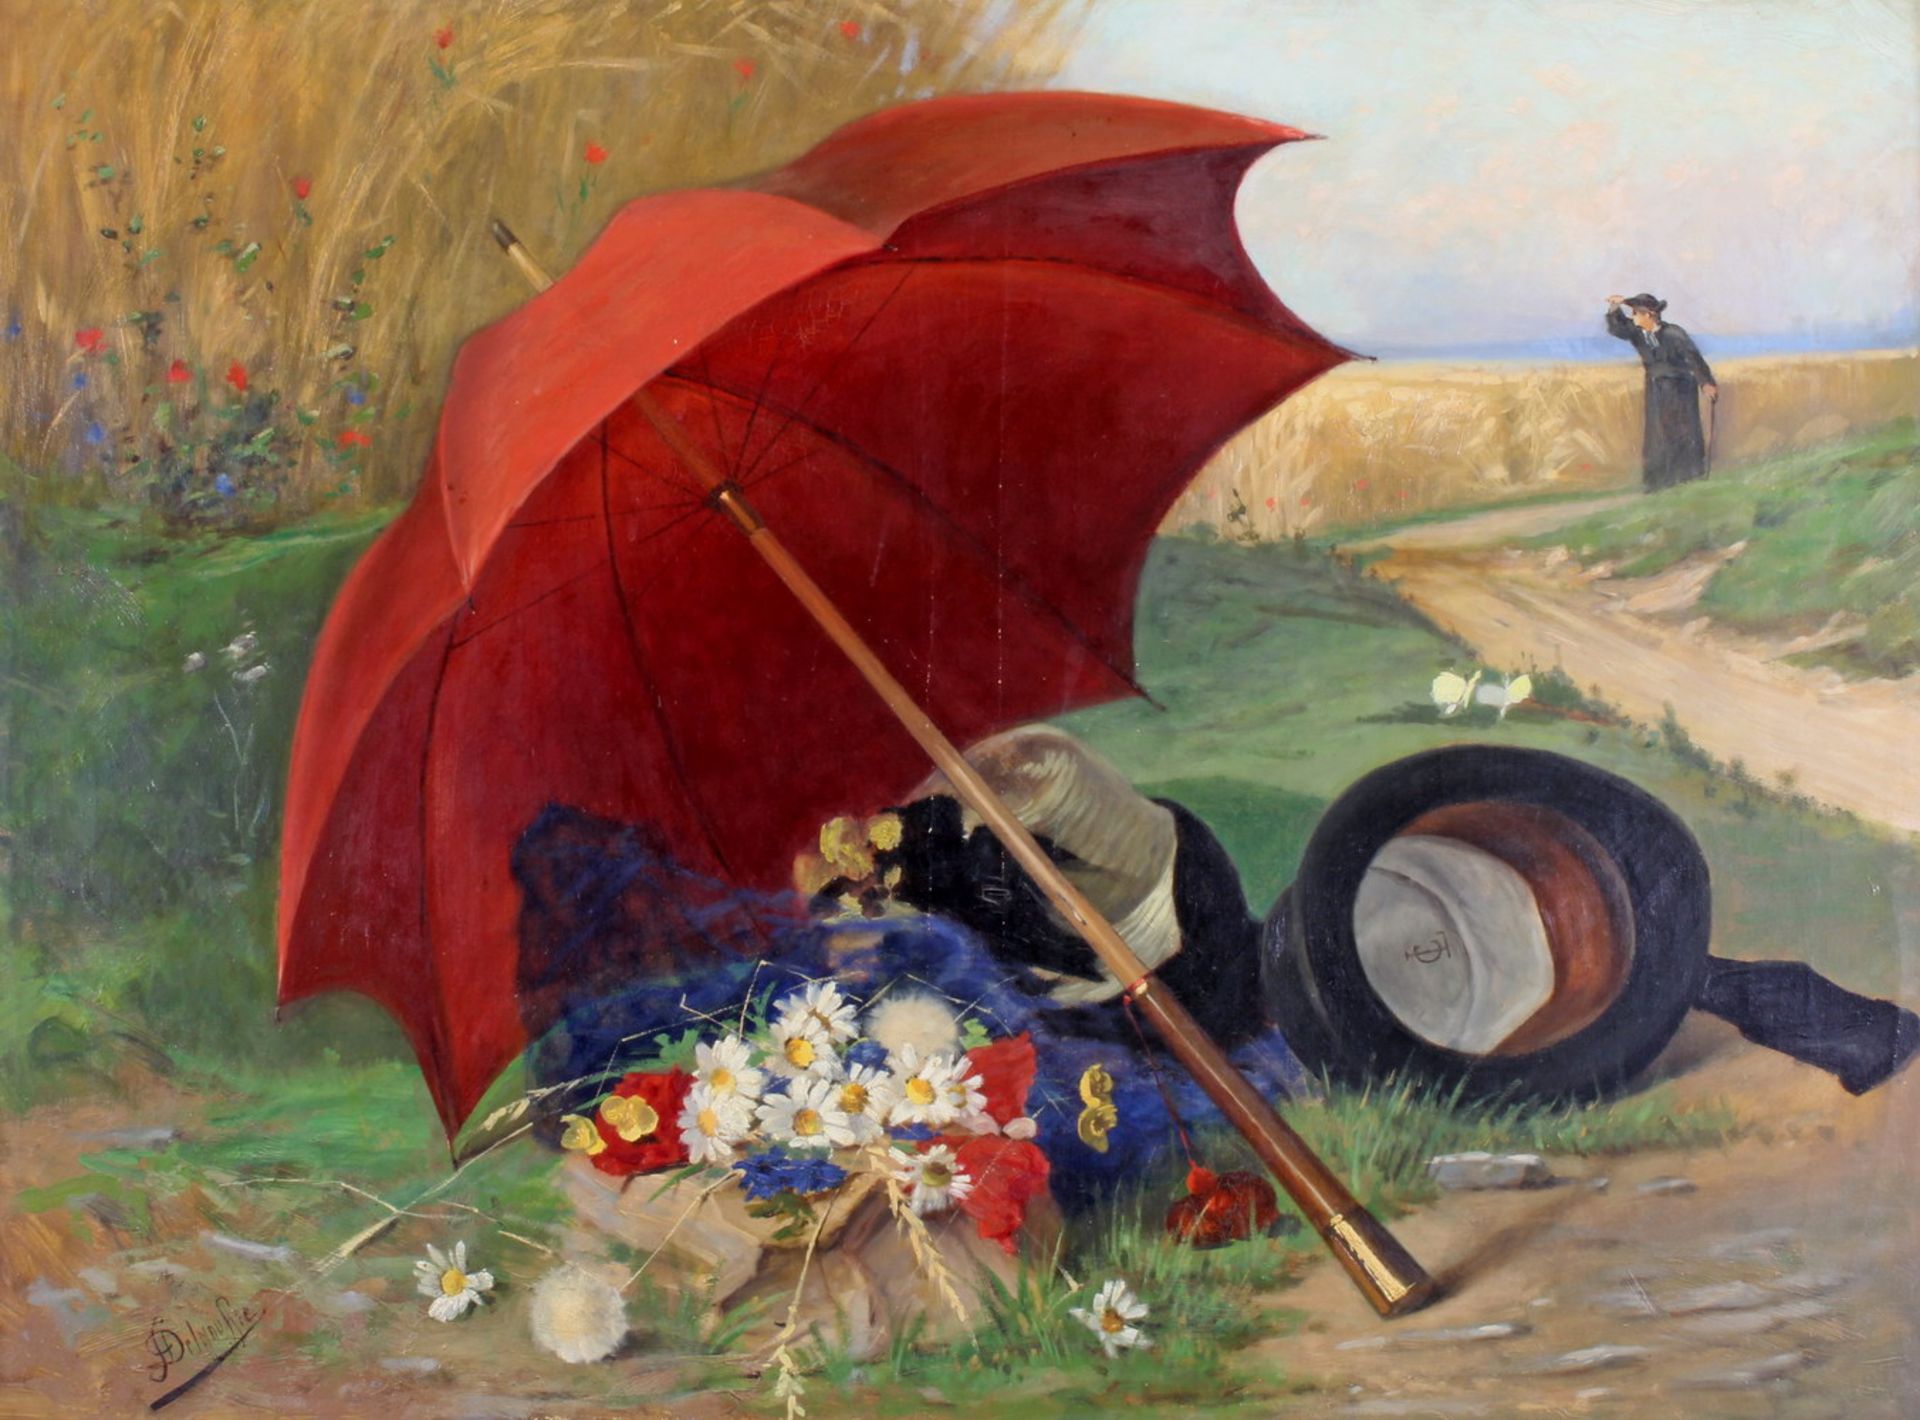 Delgouffre, Fernand (1848 - 1900, belgischer Maler), "Ein Schelm ist, wer Böses denkt", Öl auf